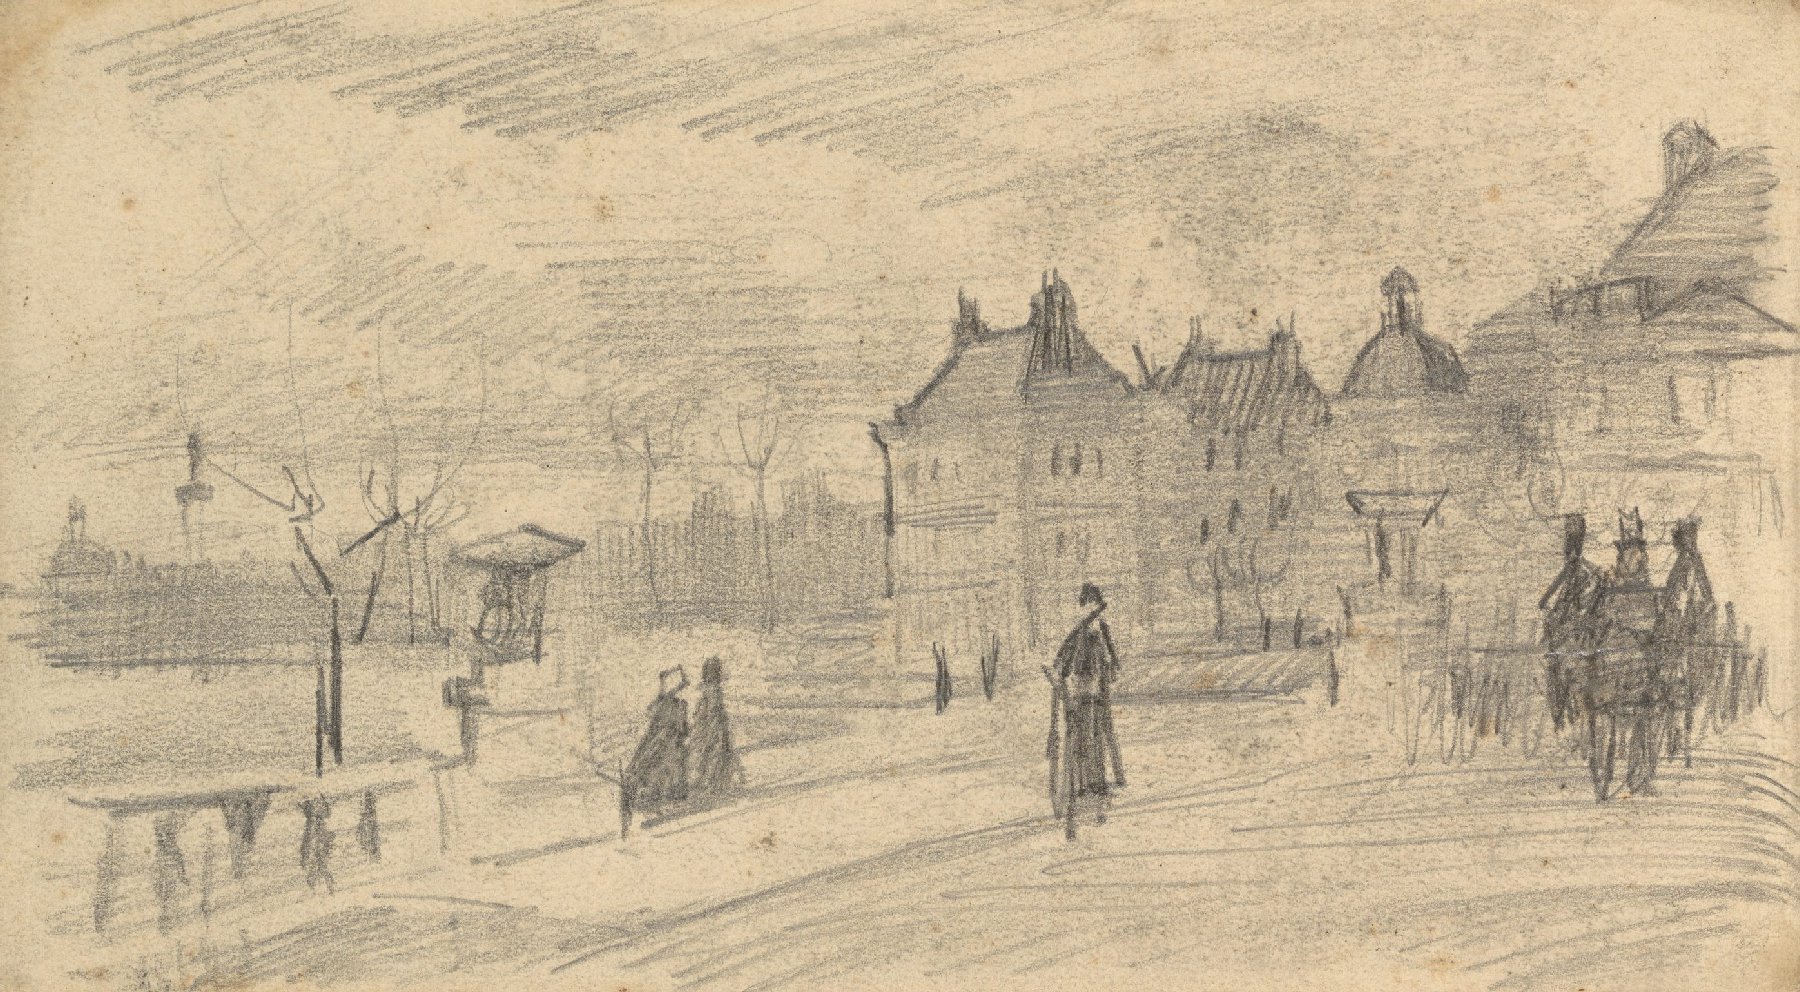 Palais du Luxembourg gezien vanuit de tuin Vincent van Gogh (1853 - 1890), Parijs, februari-juni 1886